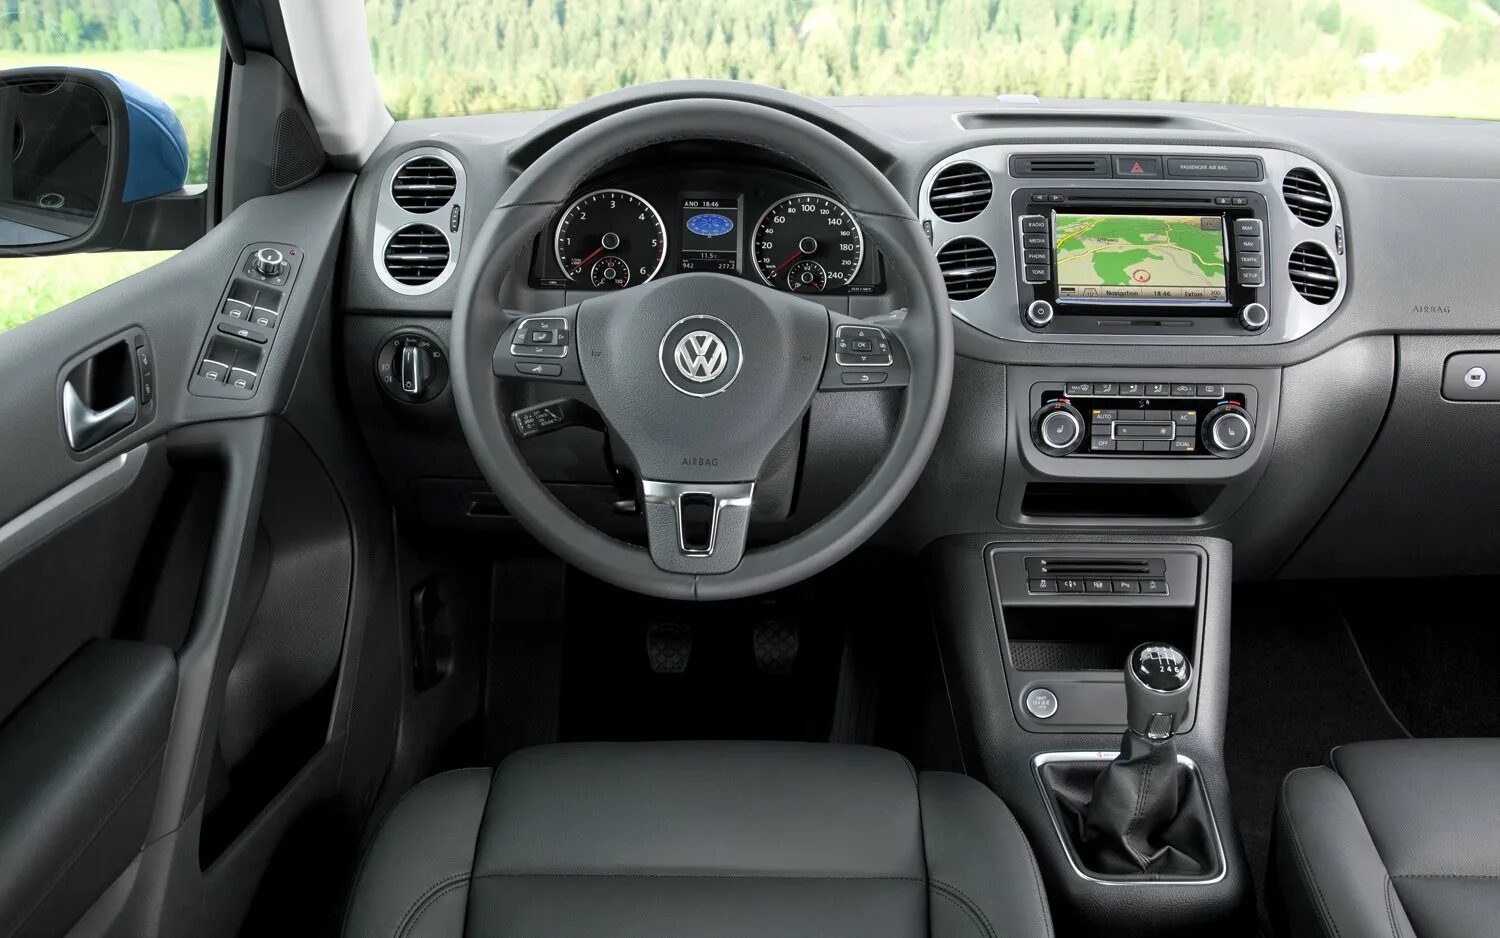 Volkswagen tiguan салон. Volkswagen Tiguan 2014 салон. Volkswagen Tiguan 2012 Interior. Volkswagen Tiguan 2012 салон. Фольксваген Тигуан салон.